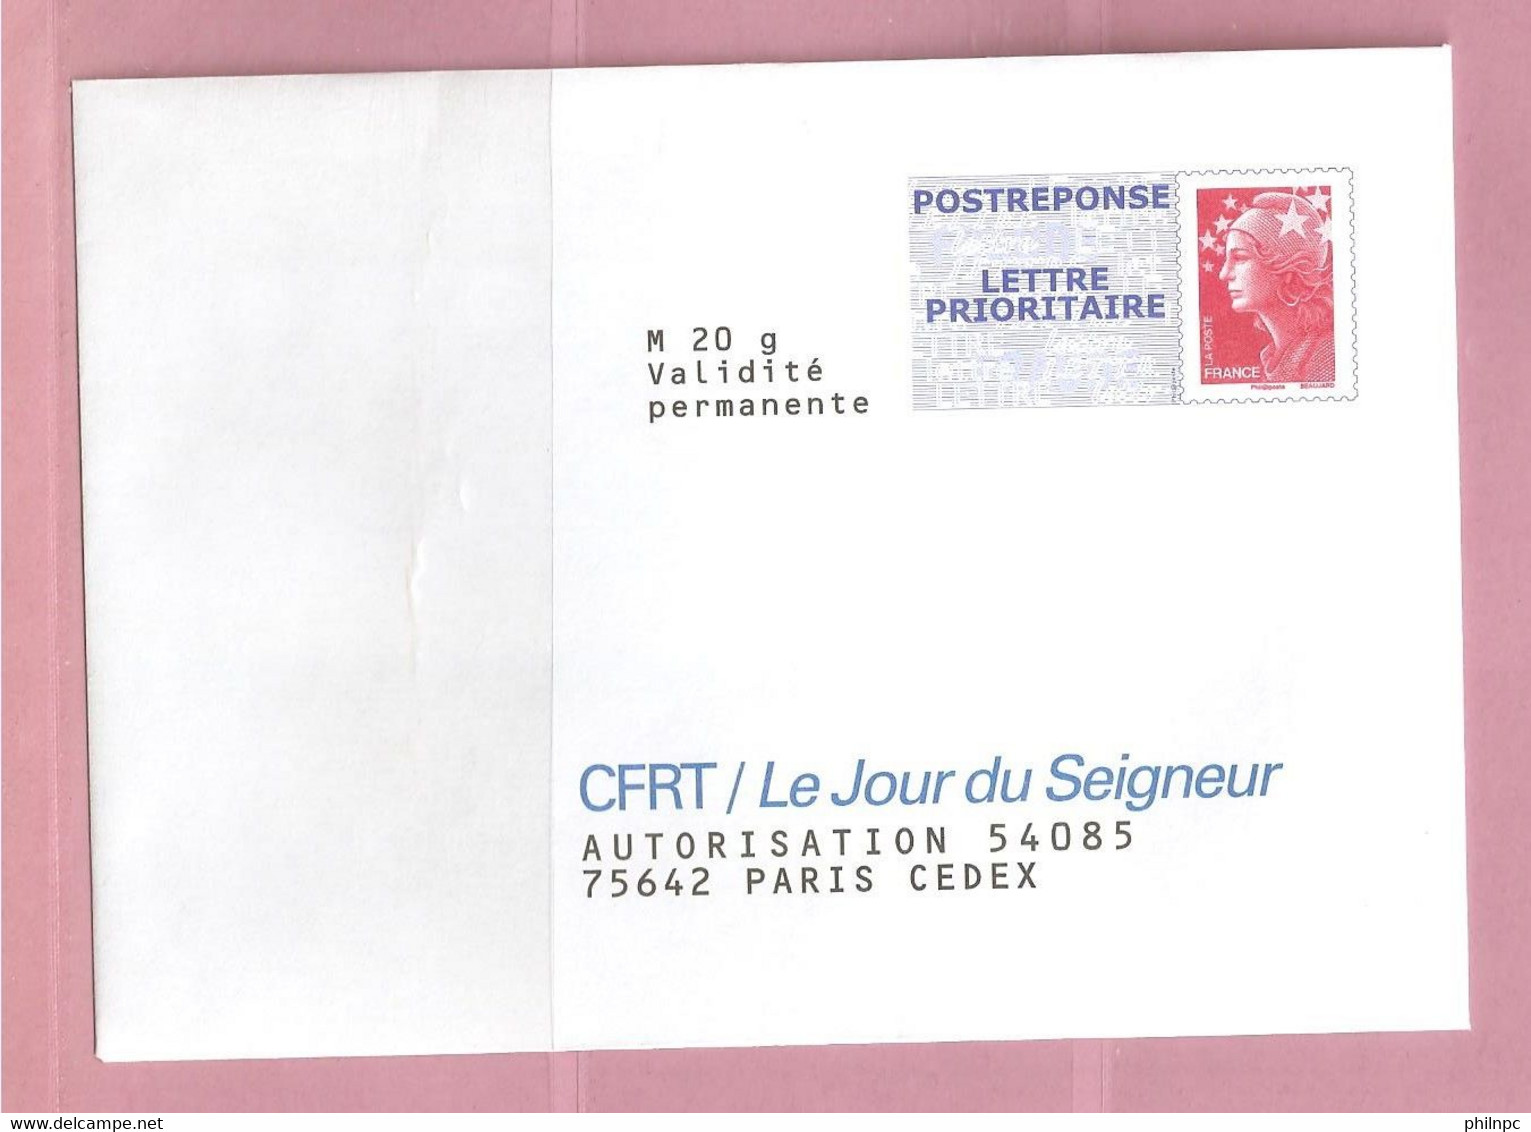 France, Prêt à Poster Réponse, 4230, Postréponse, CFRT Le Jour Du Seigneur, Marianne De Beaujard - Prêts-à-poster: Réponse /Beaujard